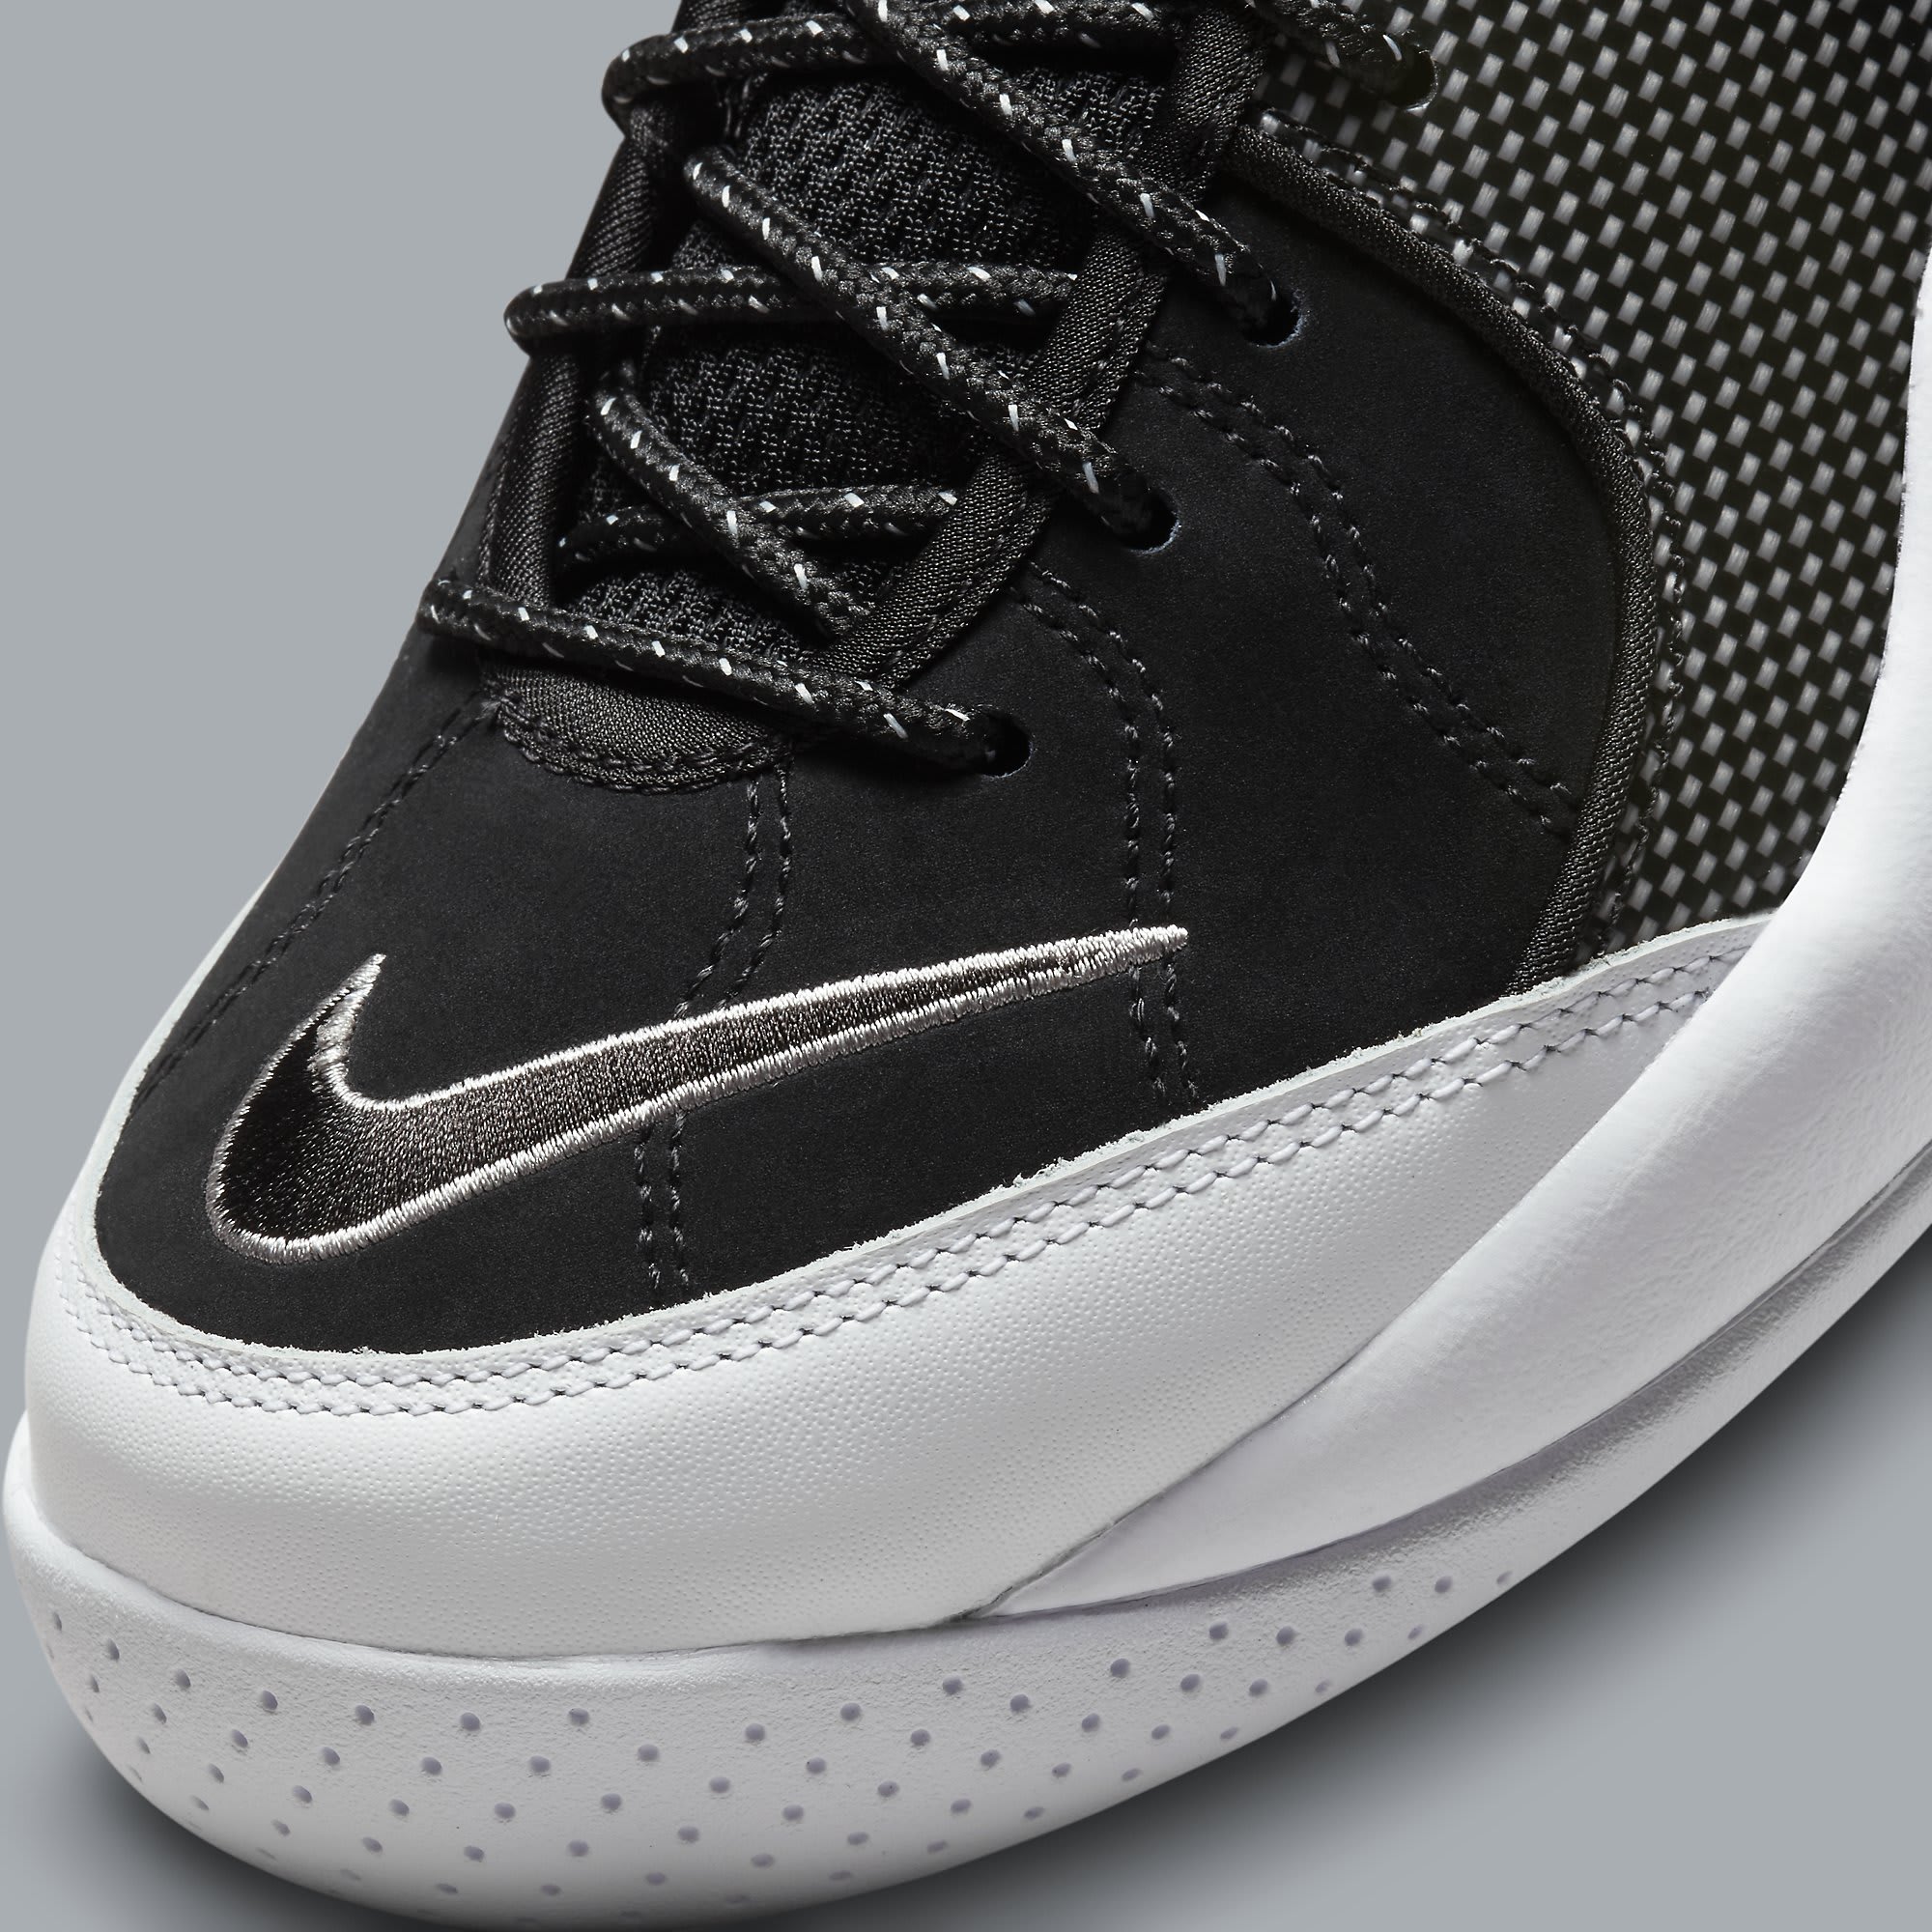 Nike Air Zoom Flight 95 OG Jason Kidd Release Date DM0523-001 Toe Detail